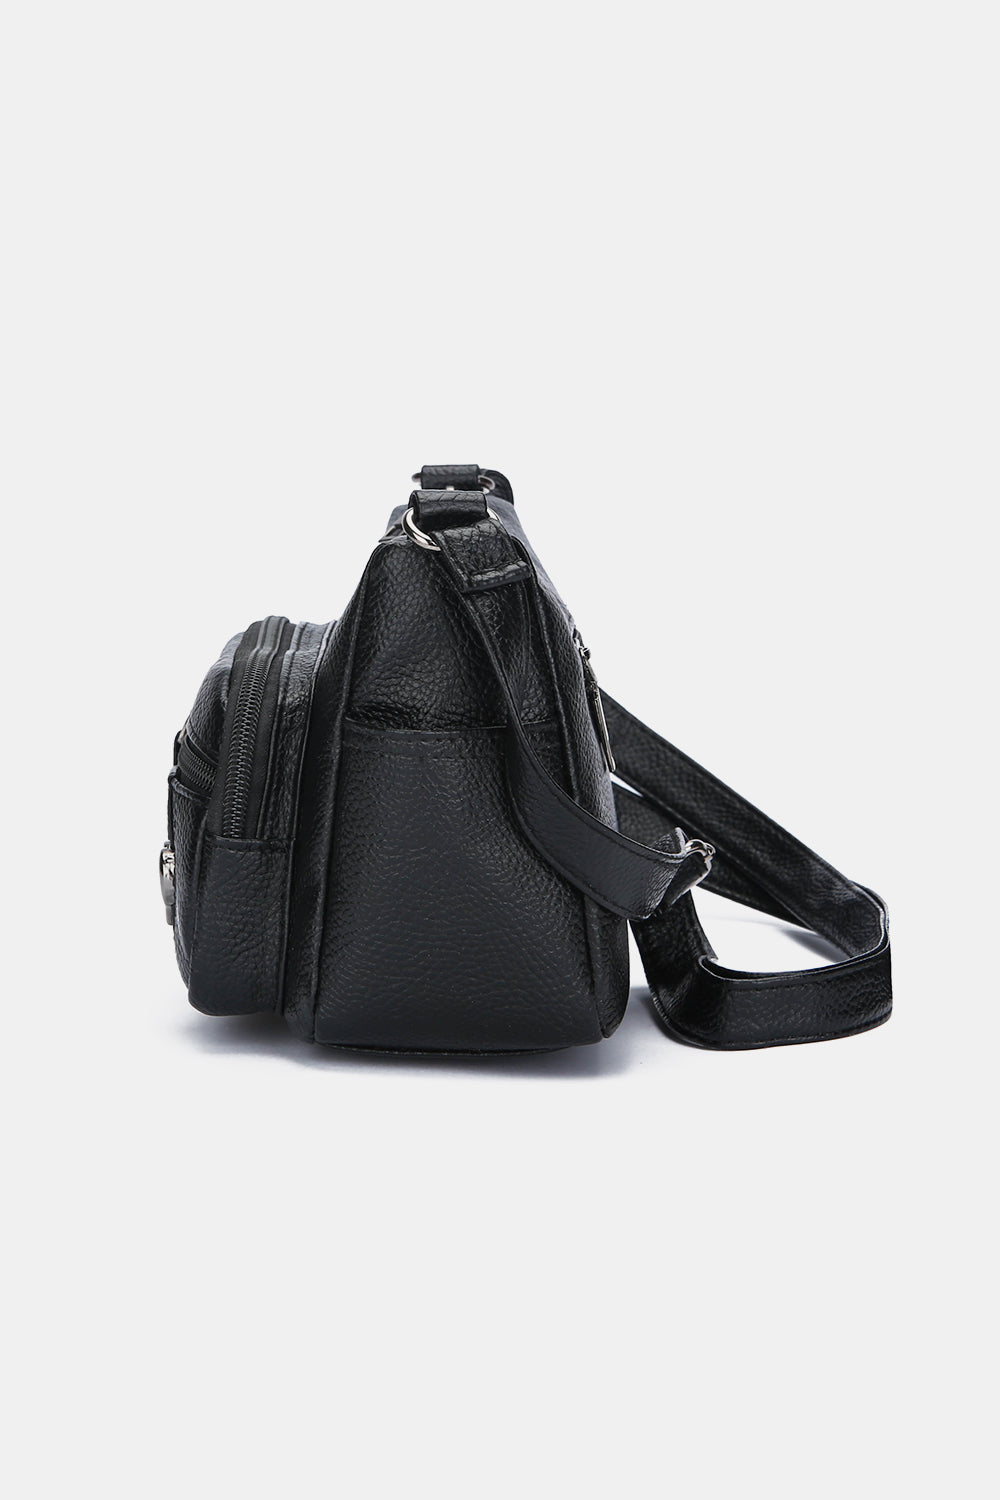 Adjustable Strap Shoulder Bag